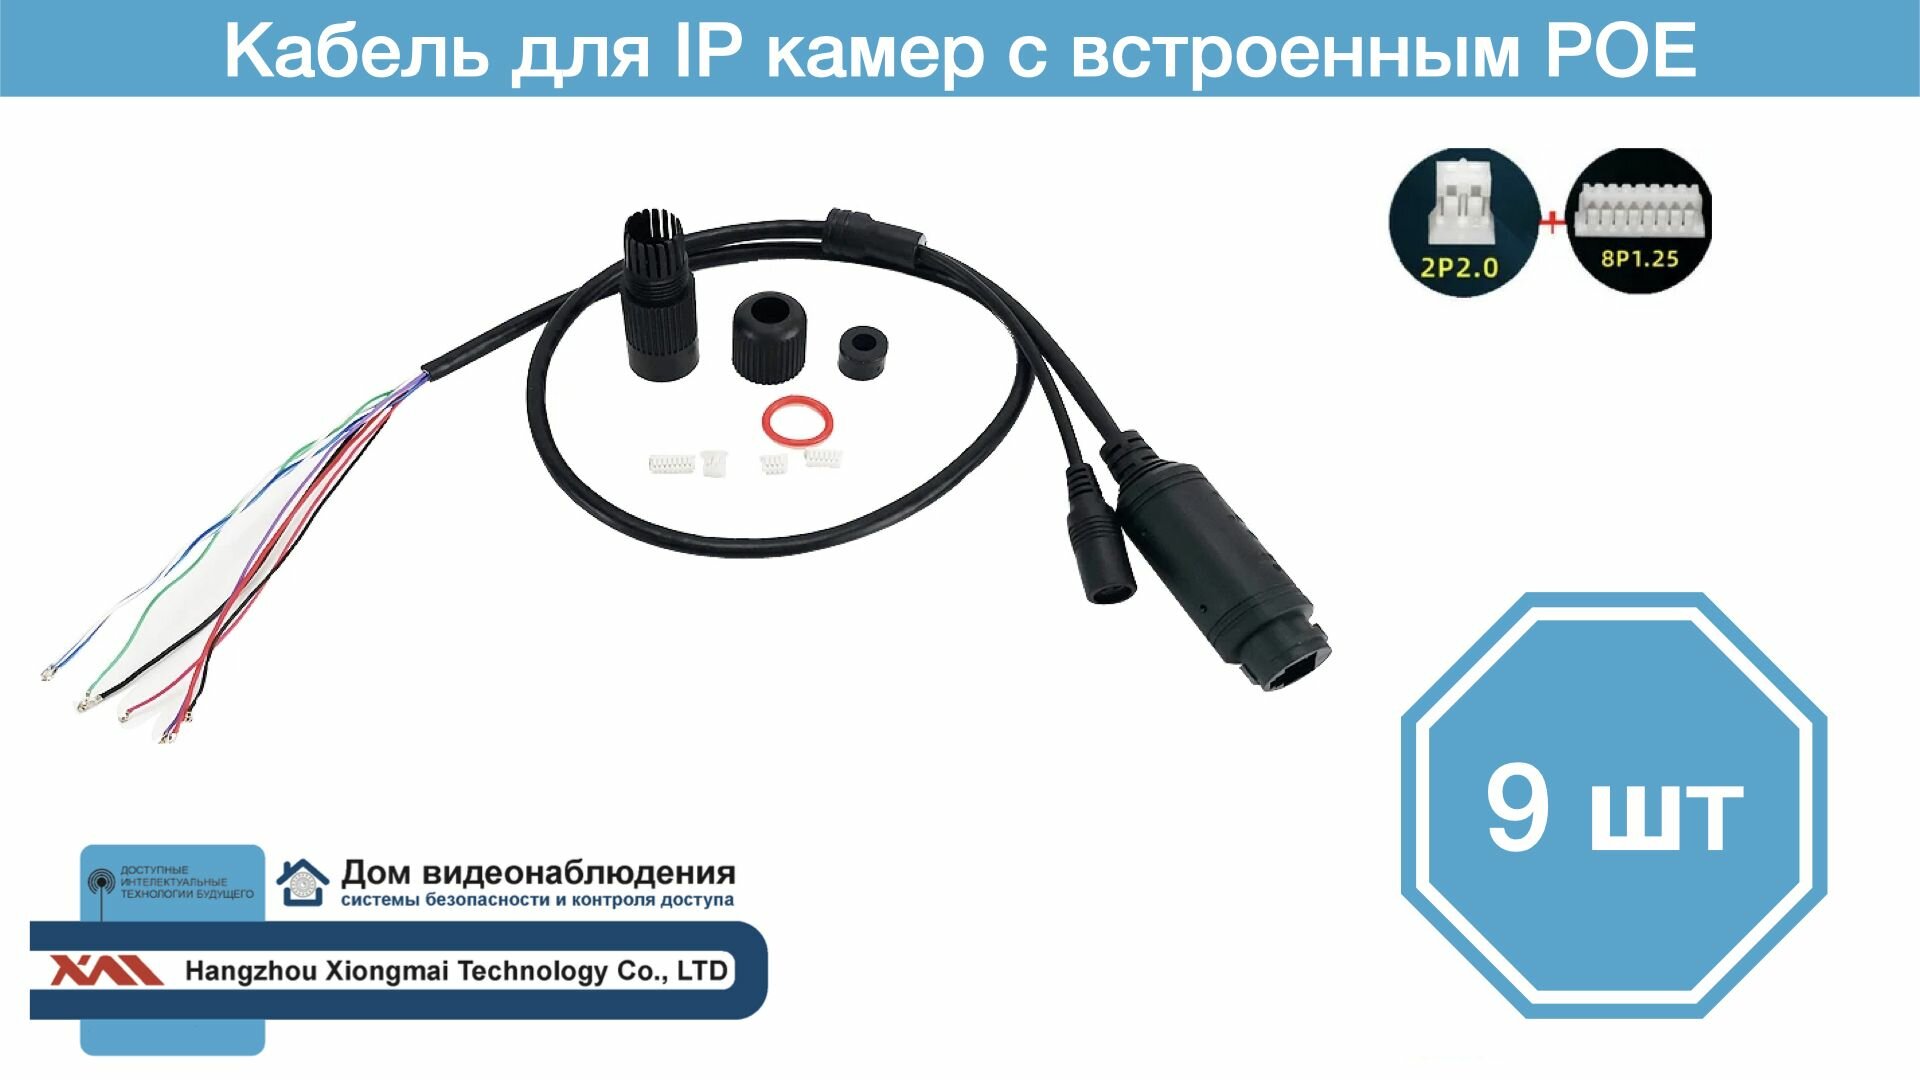 CIPB(POE). Кабель для IP камер видеонаблюдения с POE и грозозащитой (9 штук).